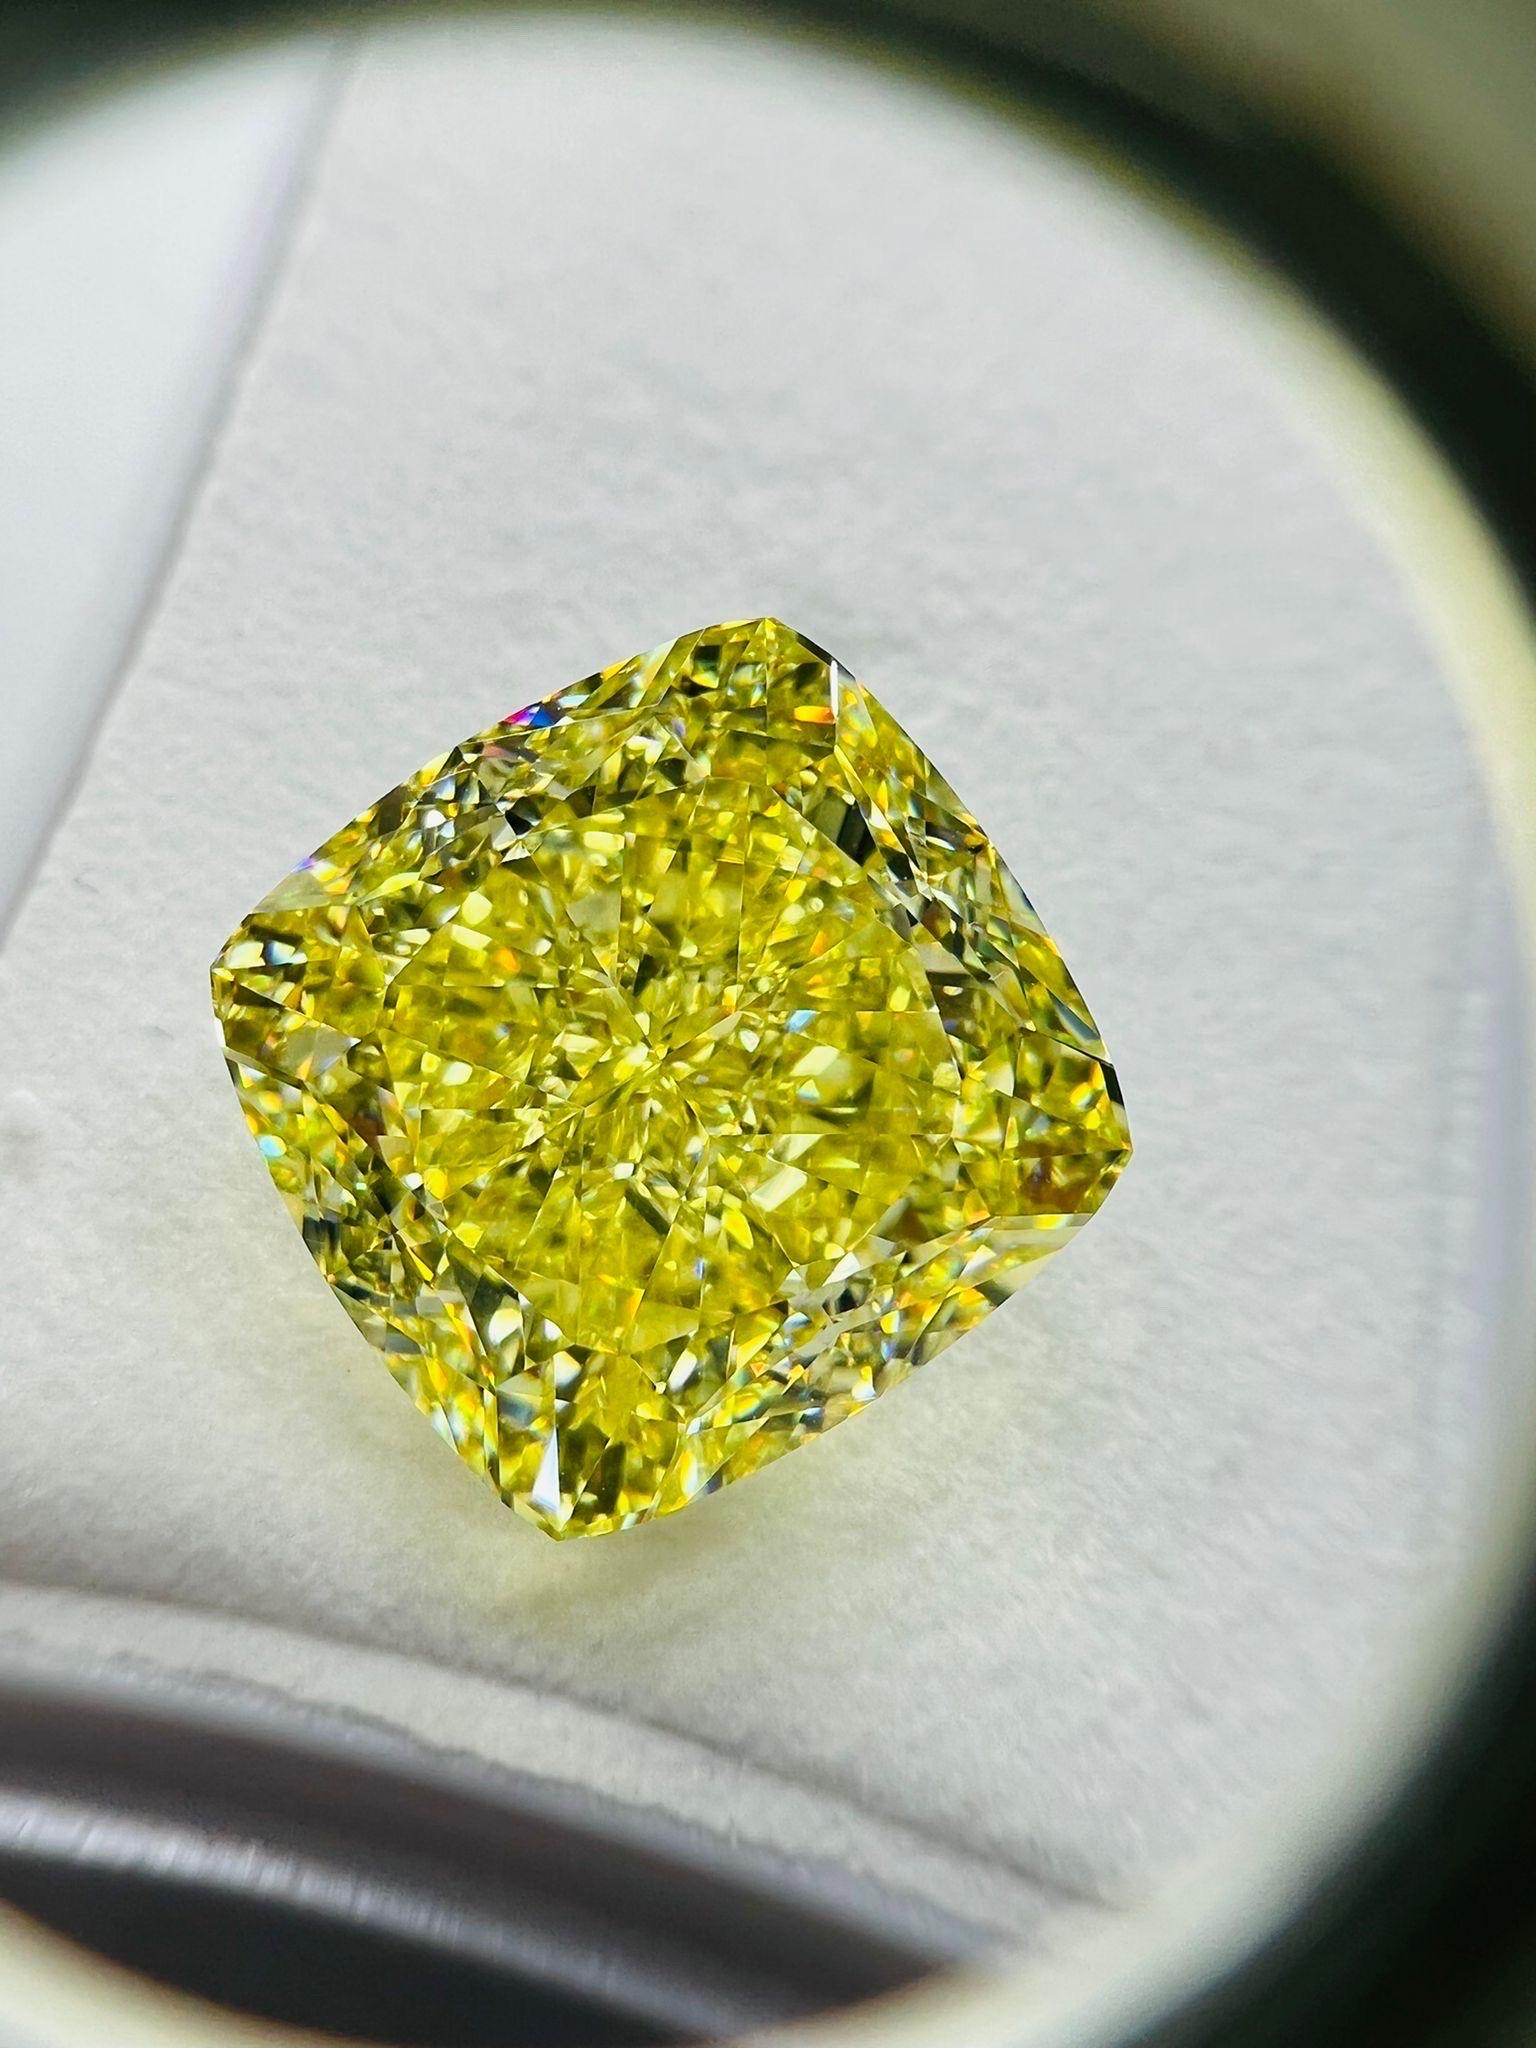 Emilio Jewelry, un grossiste/détaillant bien connu et respecté situé sur l'emblématique Cinquième Avenue de New York,
Un magnifique diamant certifié GIA de couleur jaune intense pesant un peu plus de 20 carats ! La couleur est exceptionnelle,